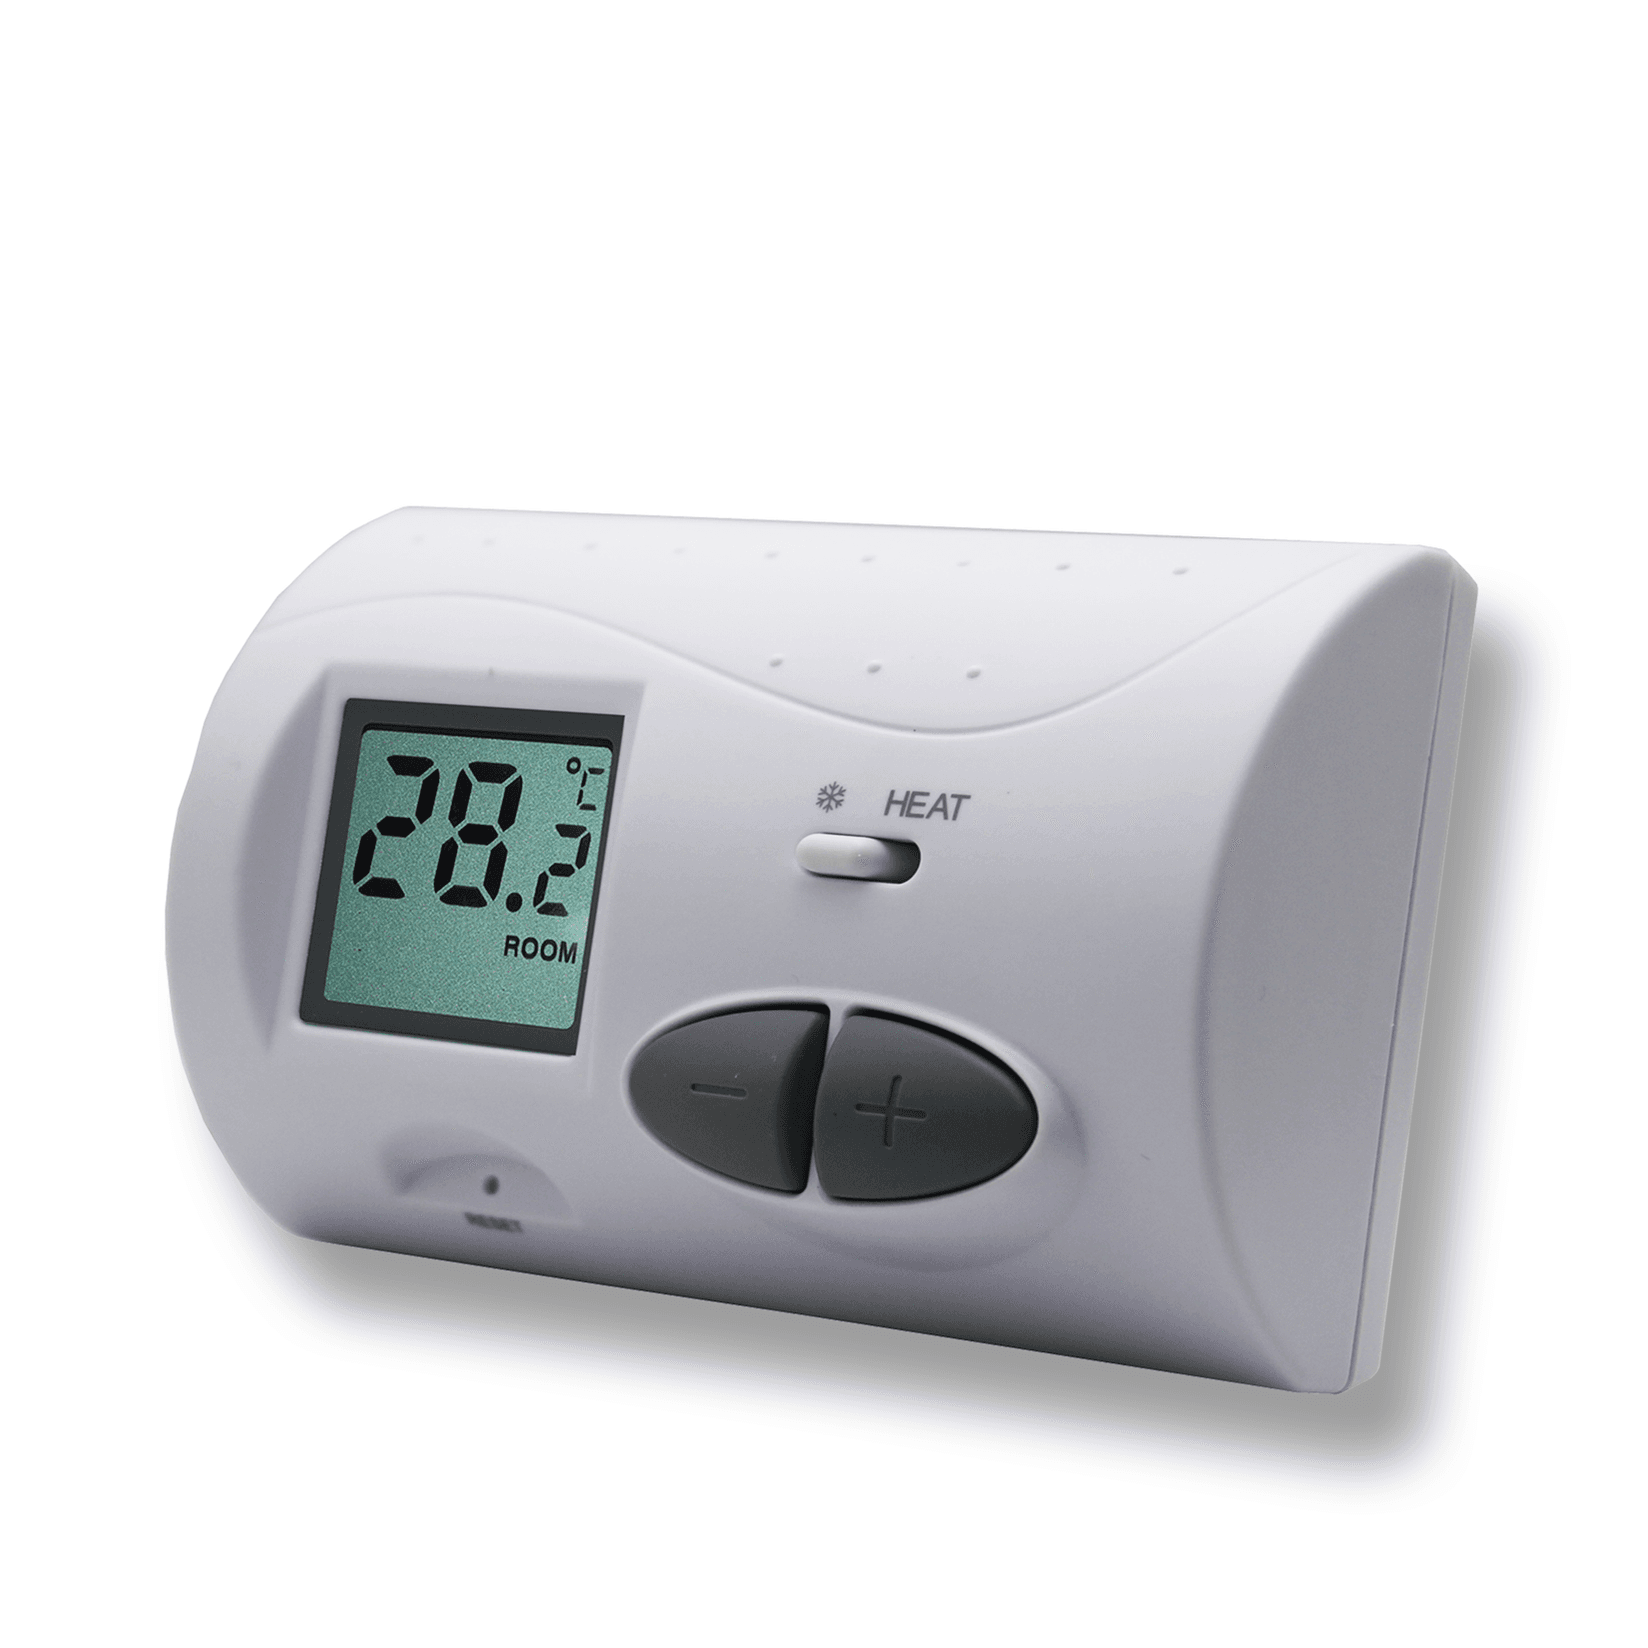 Selected image for NERO Sobni žičani termostat bez programa Q3